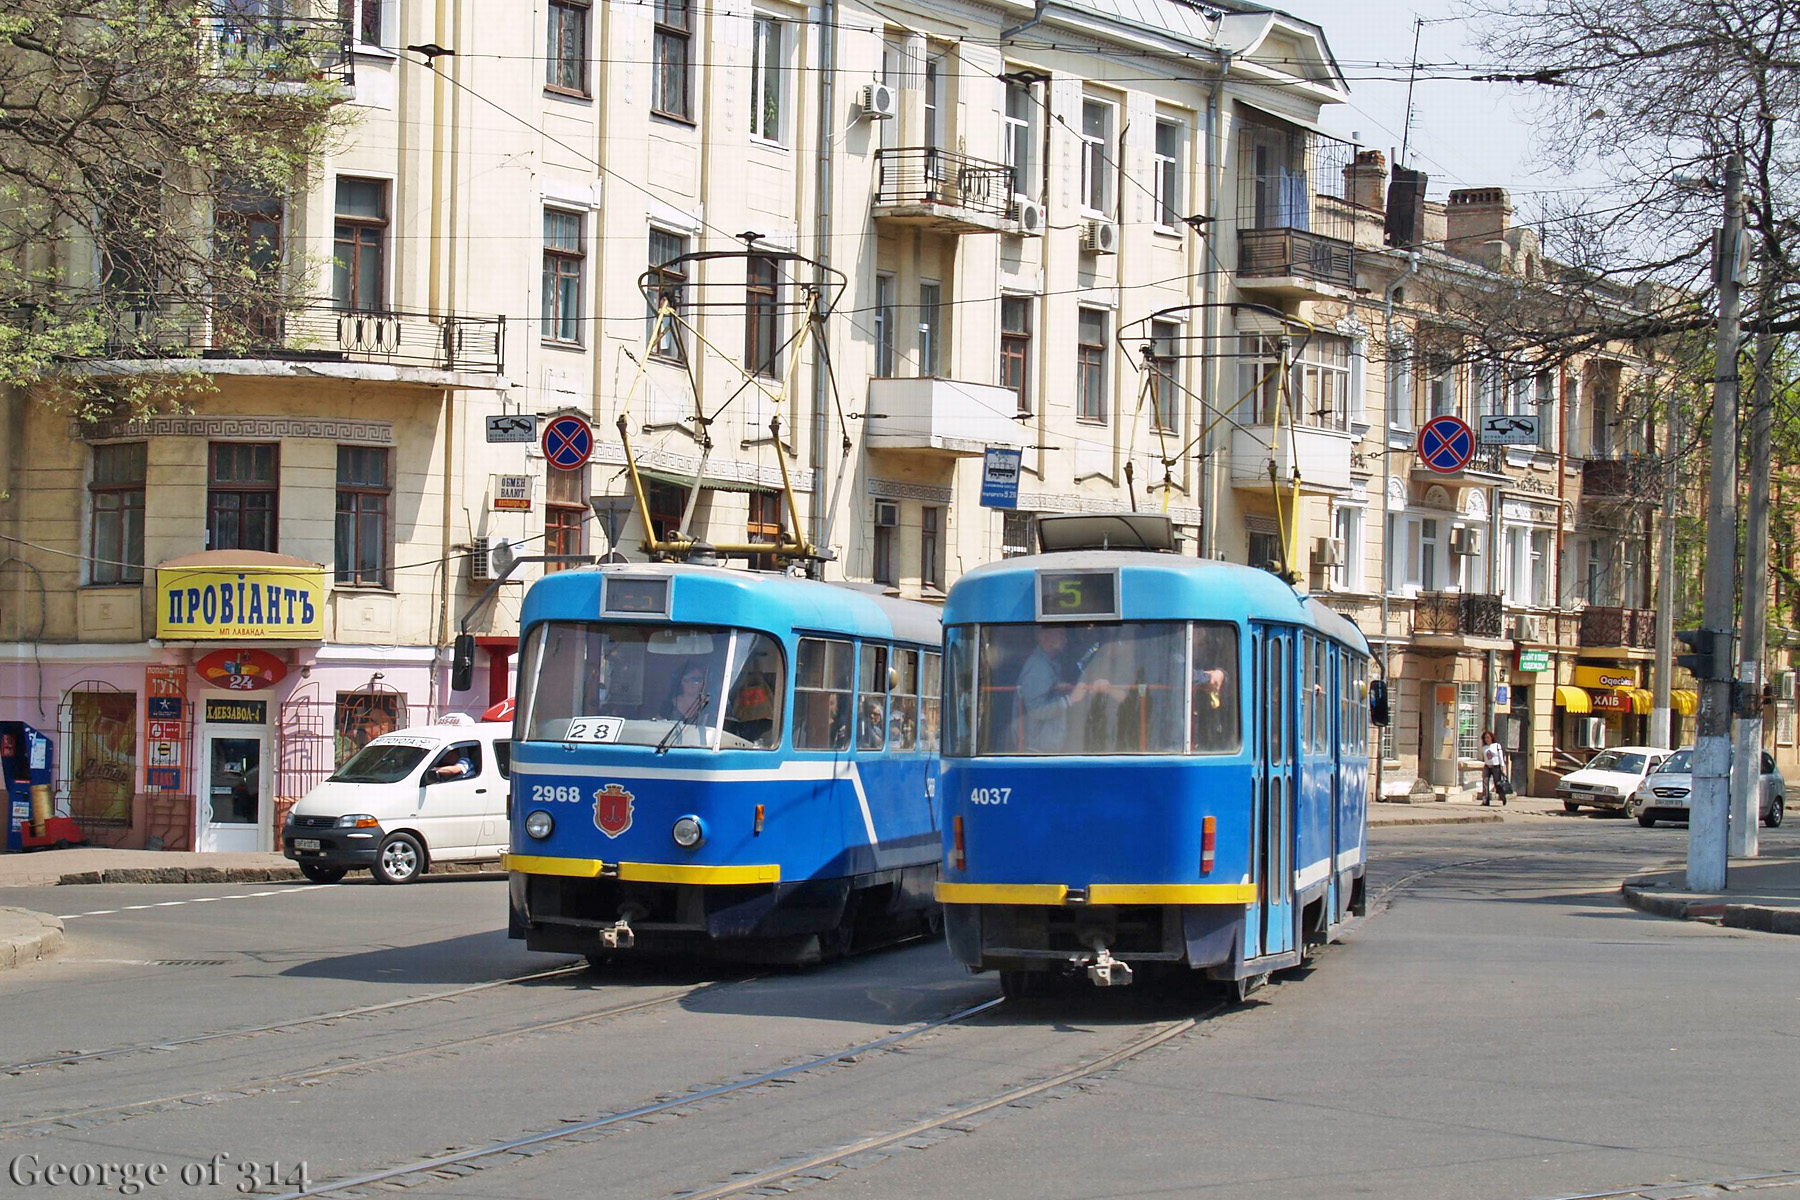 Трамваї Tatra T3SU №2968 маршрут №28 та №4037 маршрут №5, Пантелеймонівська вулиця